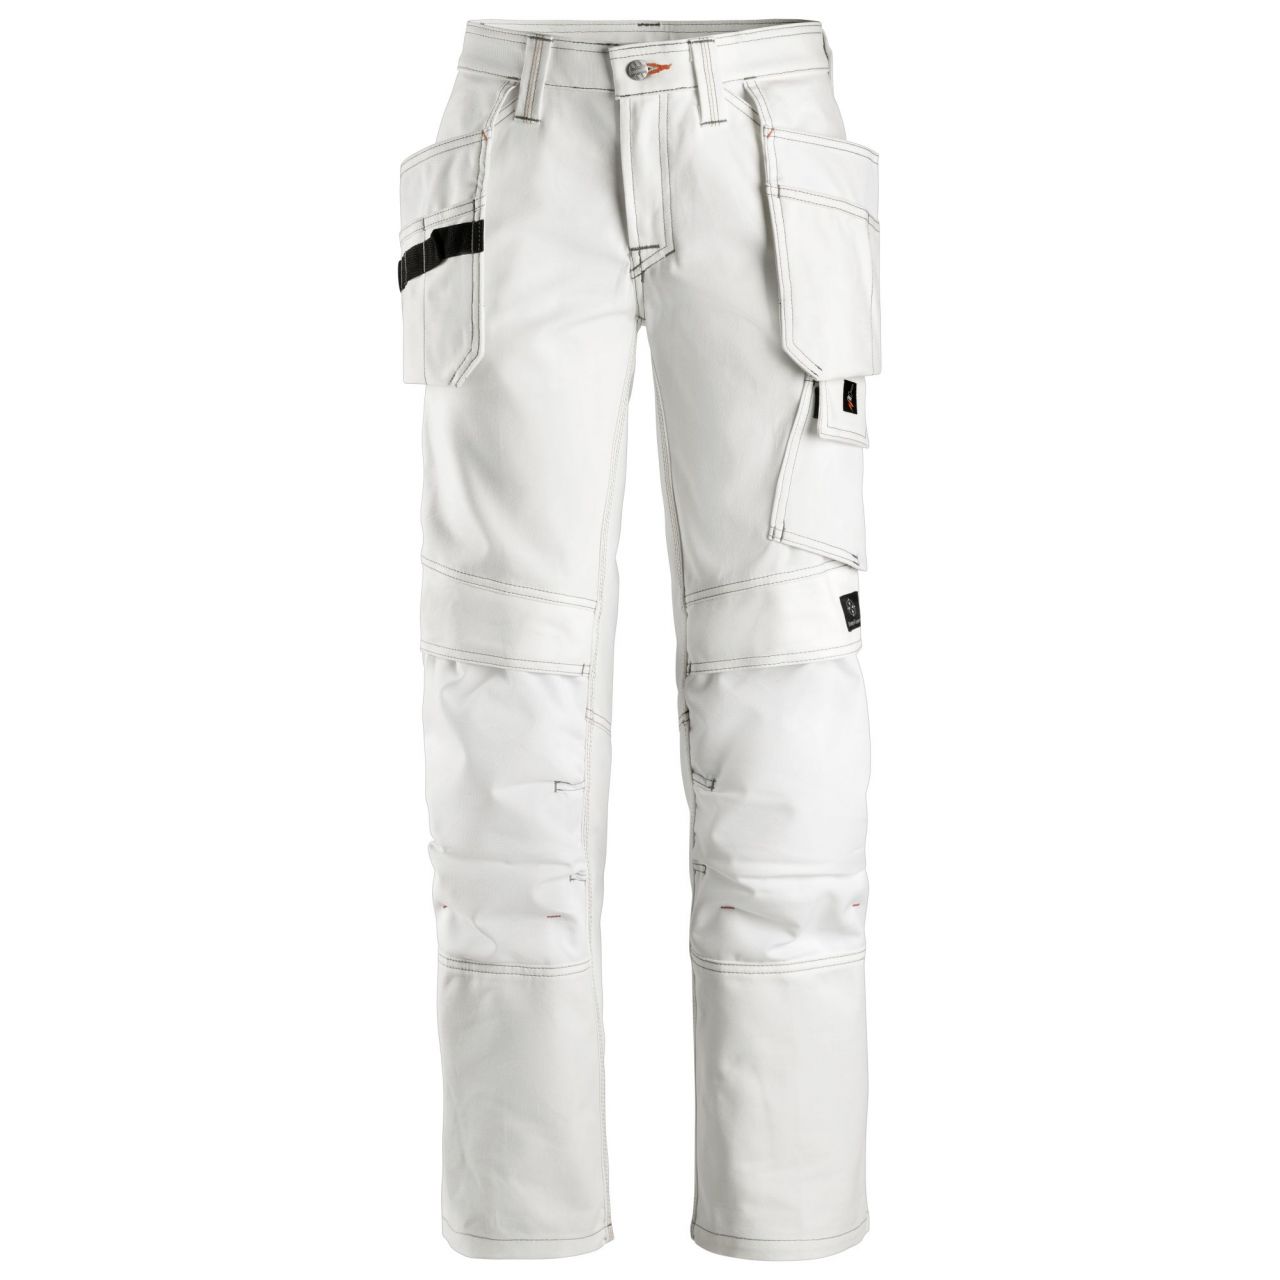 3775 Pantalón Pintor Mujer con bolsillos flotantes blanco talla 52